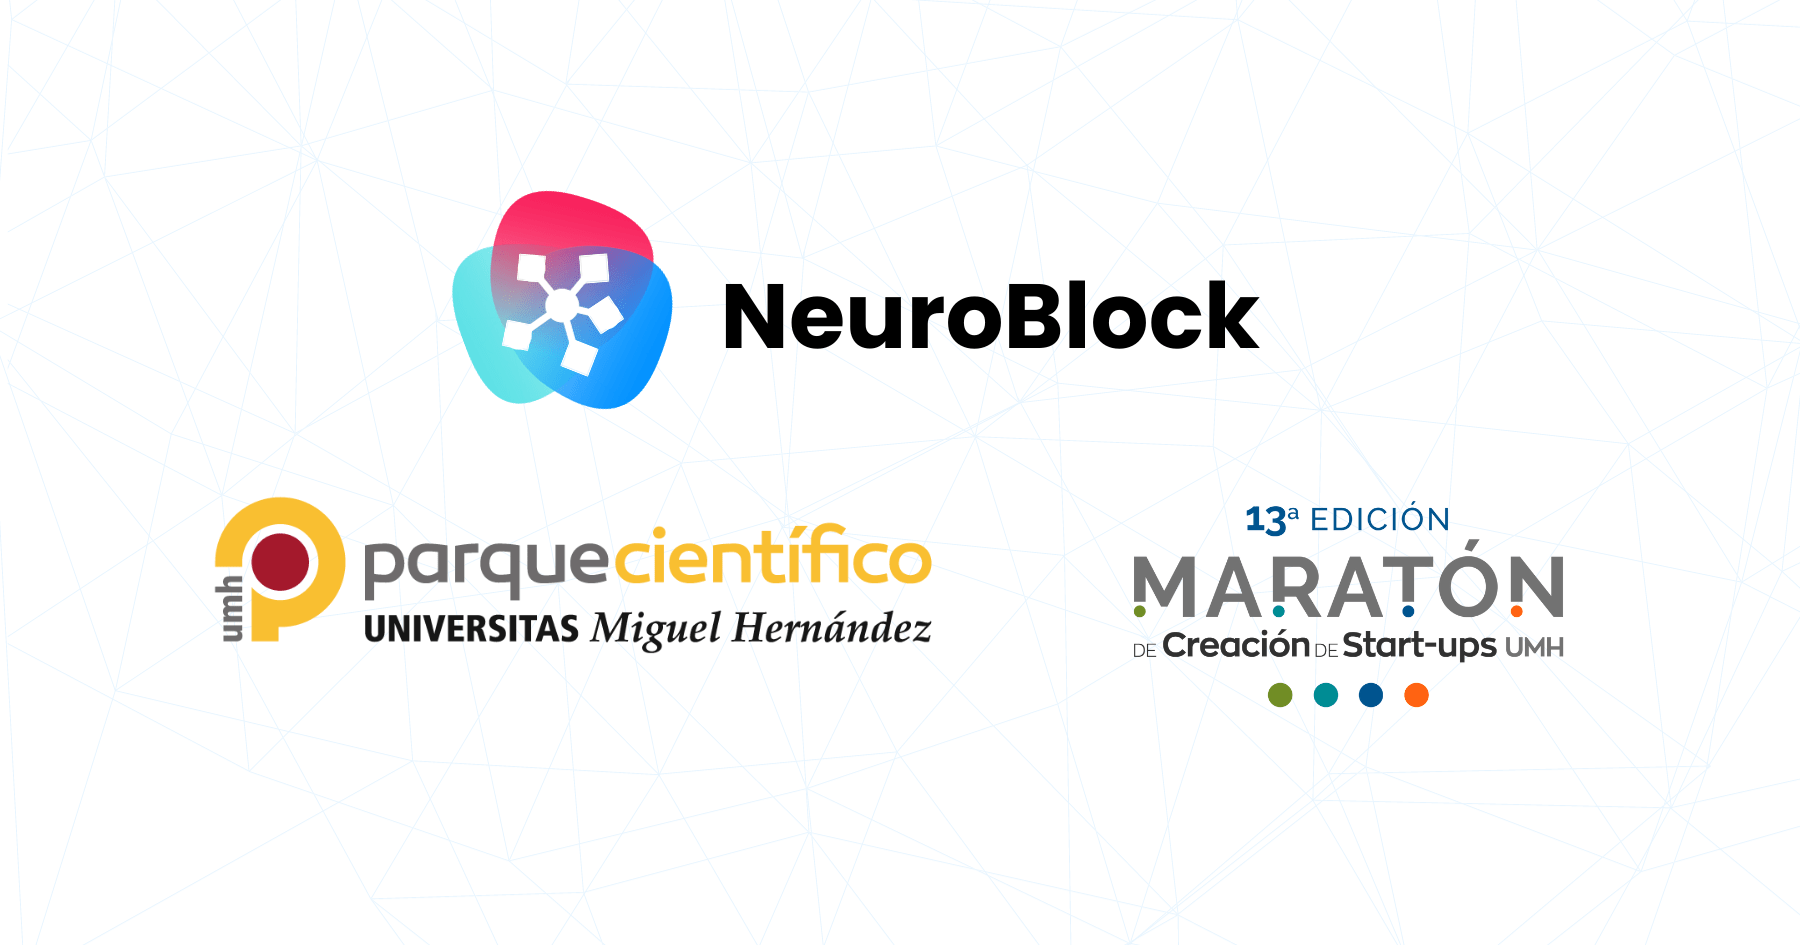 NeuroBlock Parque Científico Universidad Miguel Hernández Maratón UMH